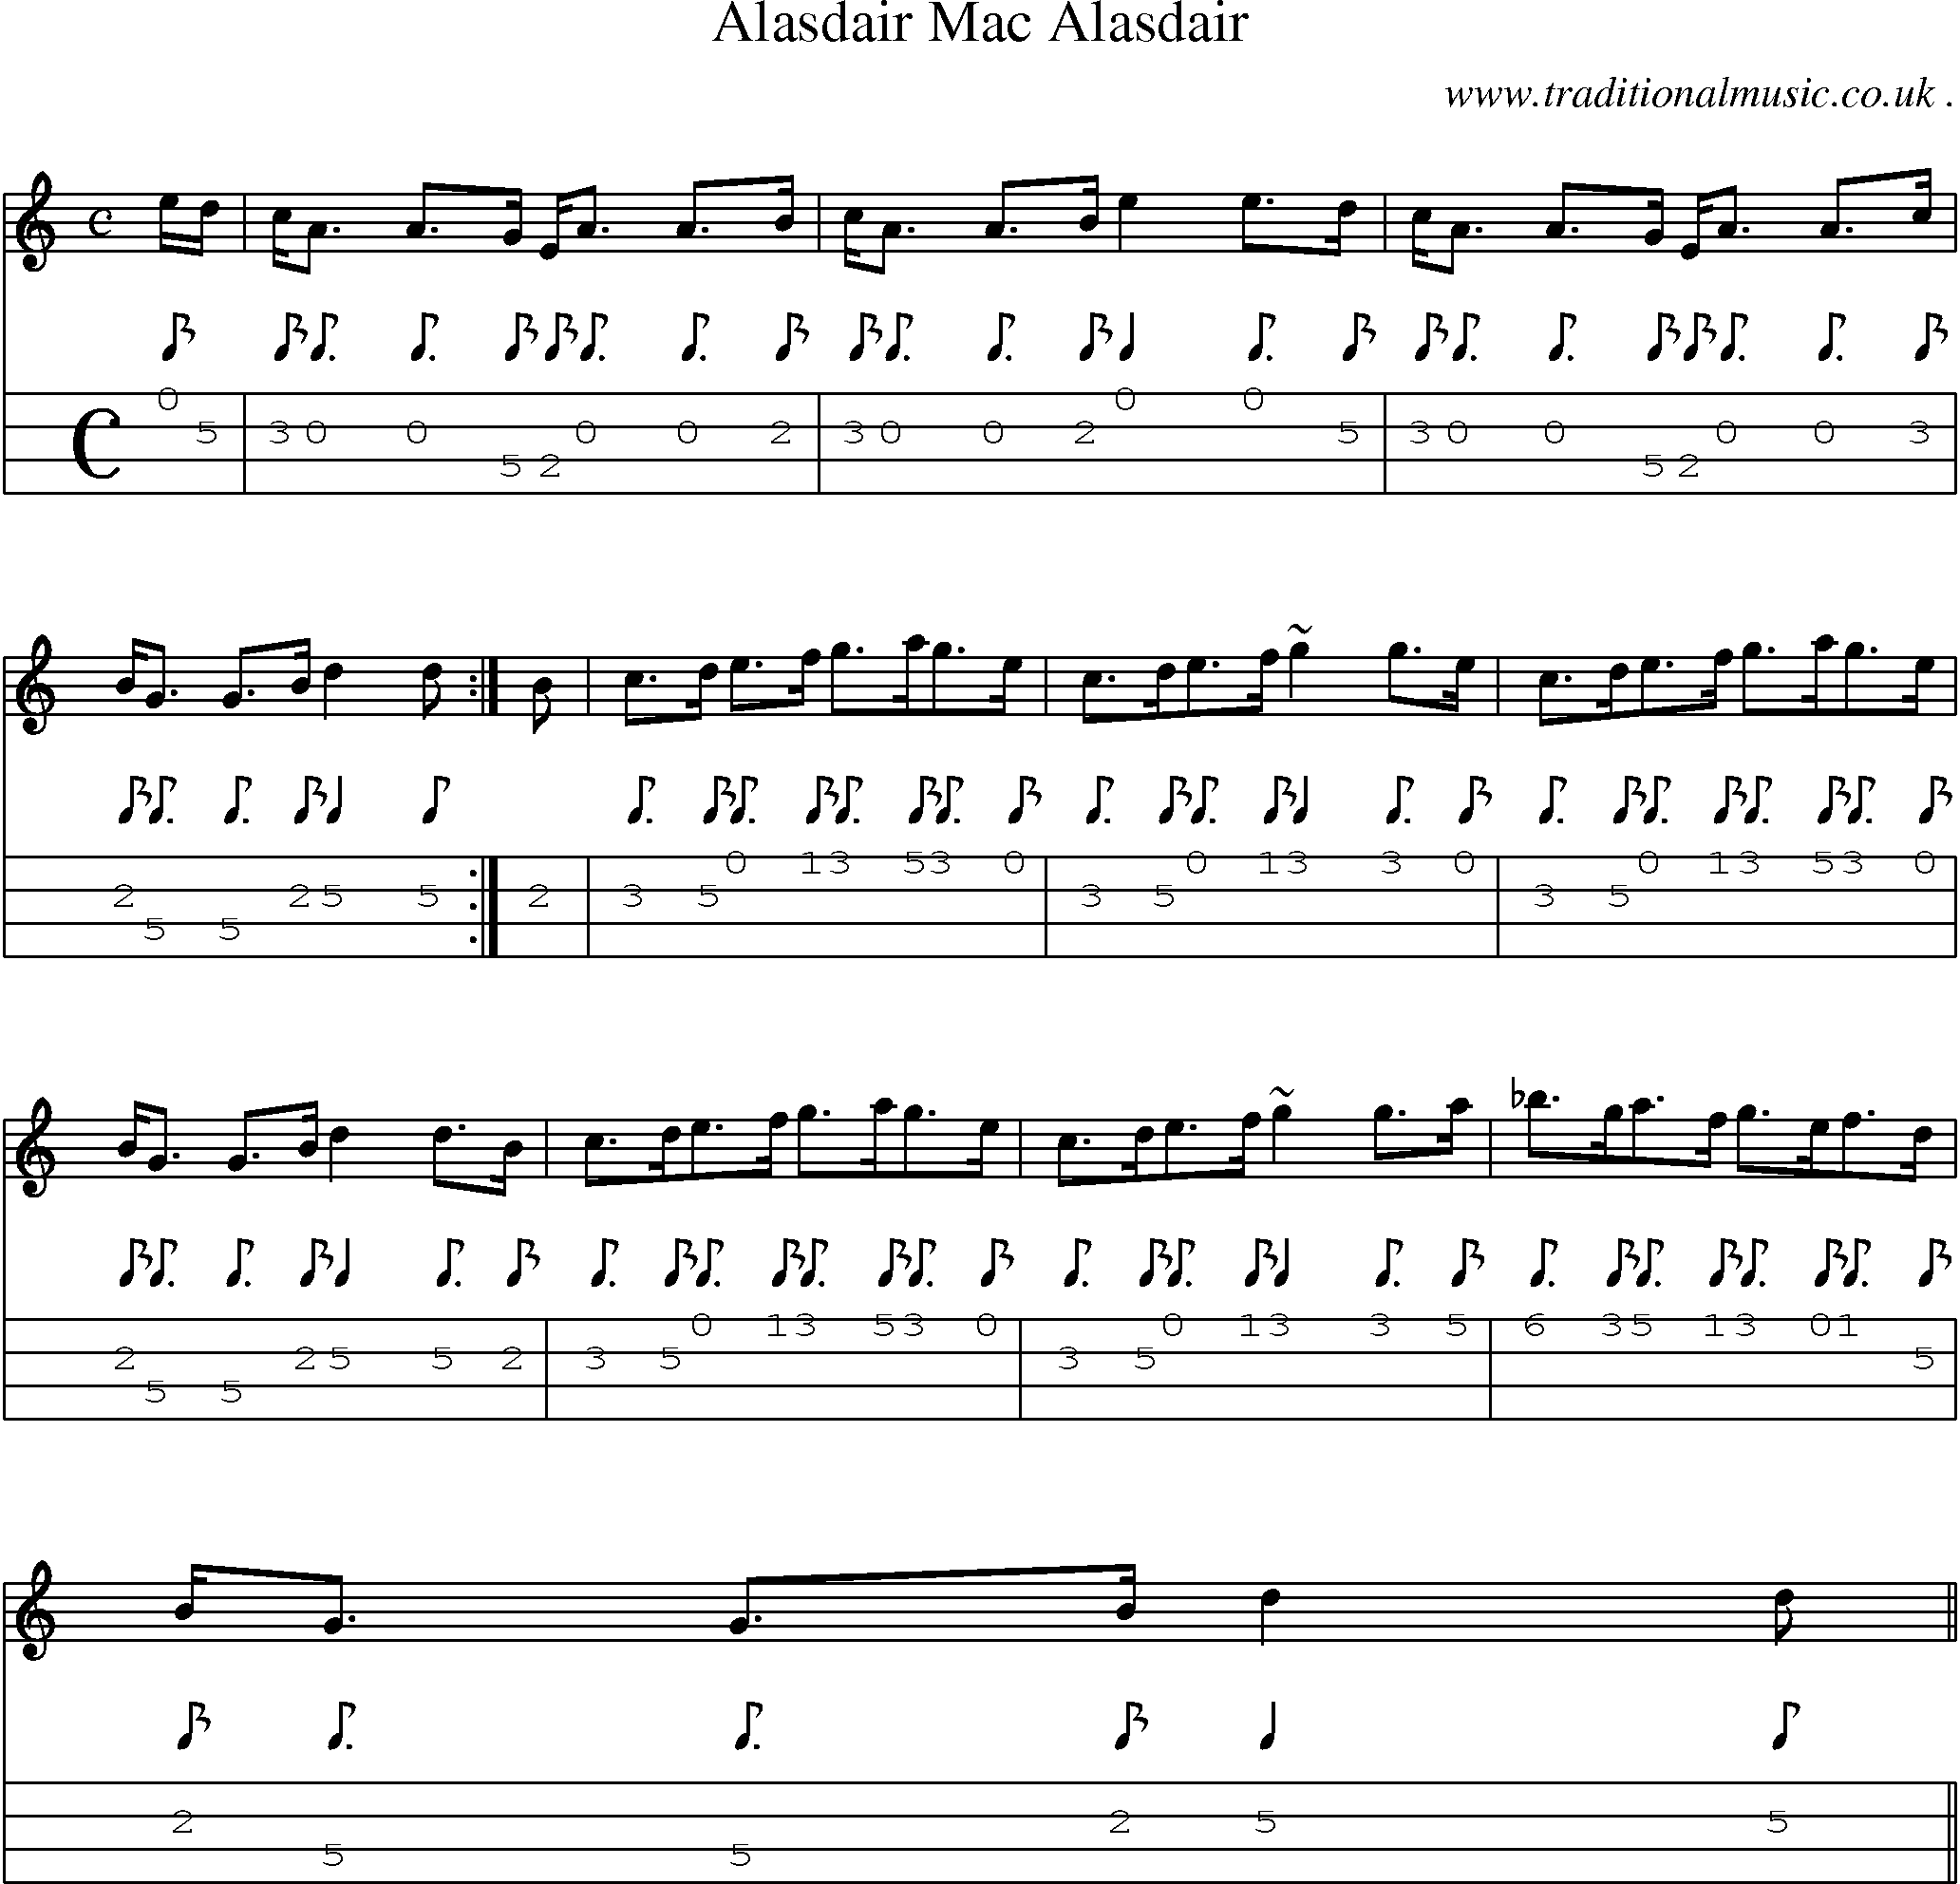 Sheet-music  score, Chords and Mandolin Tabs for Alasdair Mac Alasdair